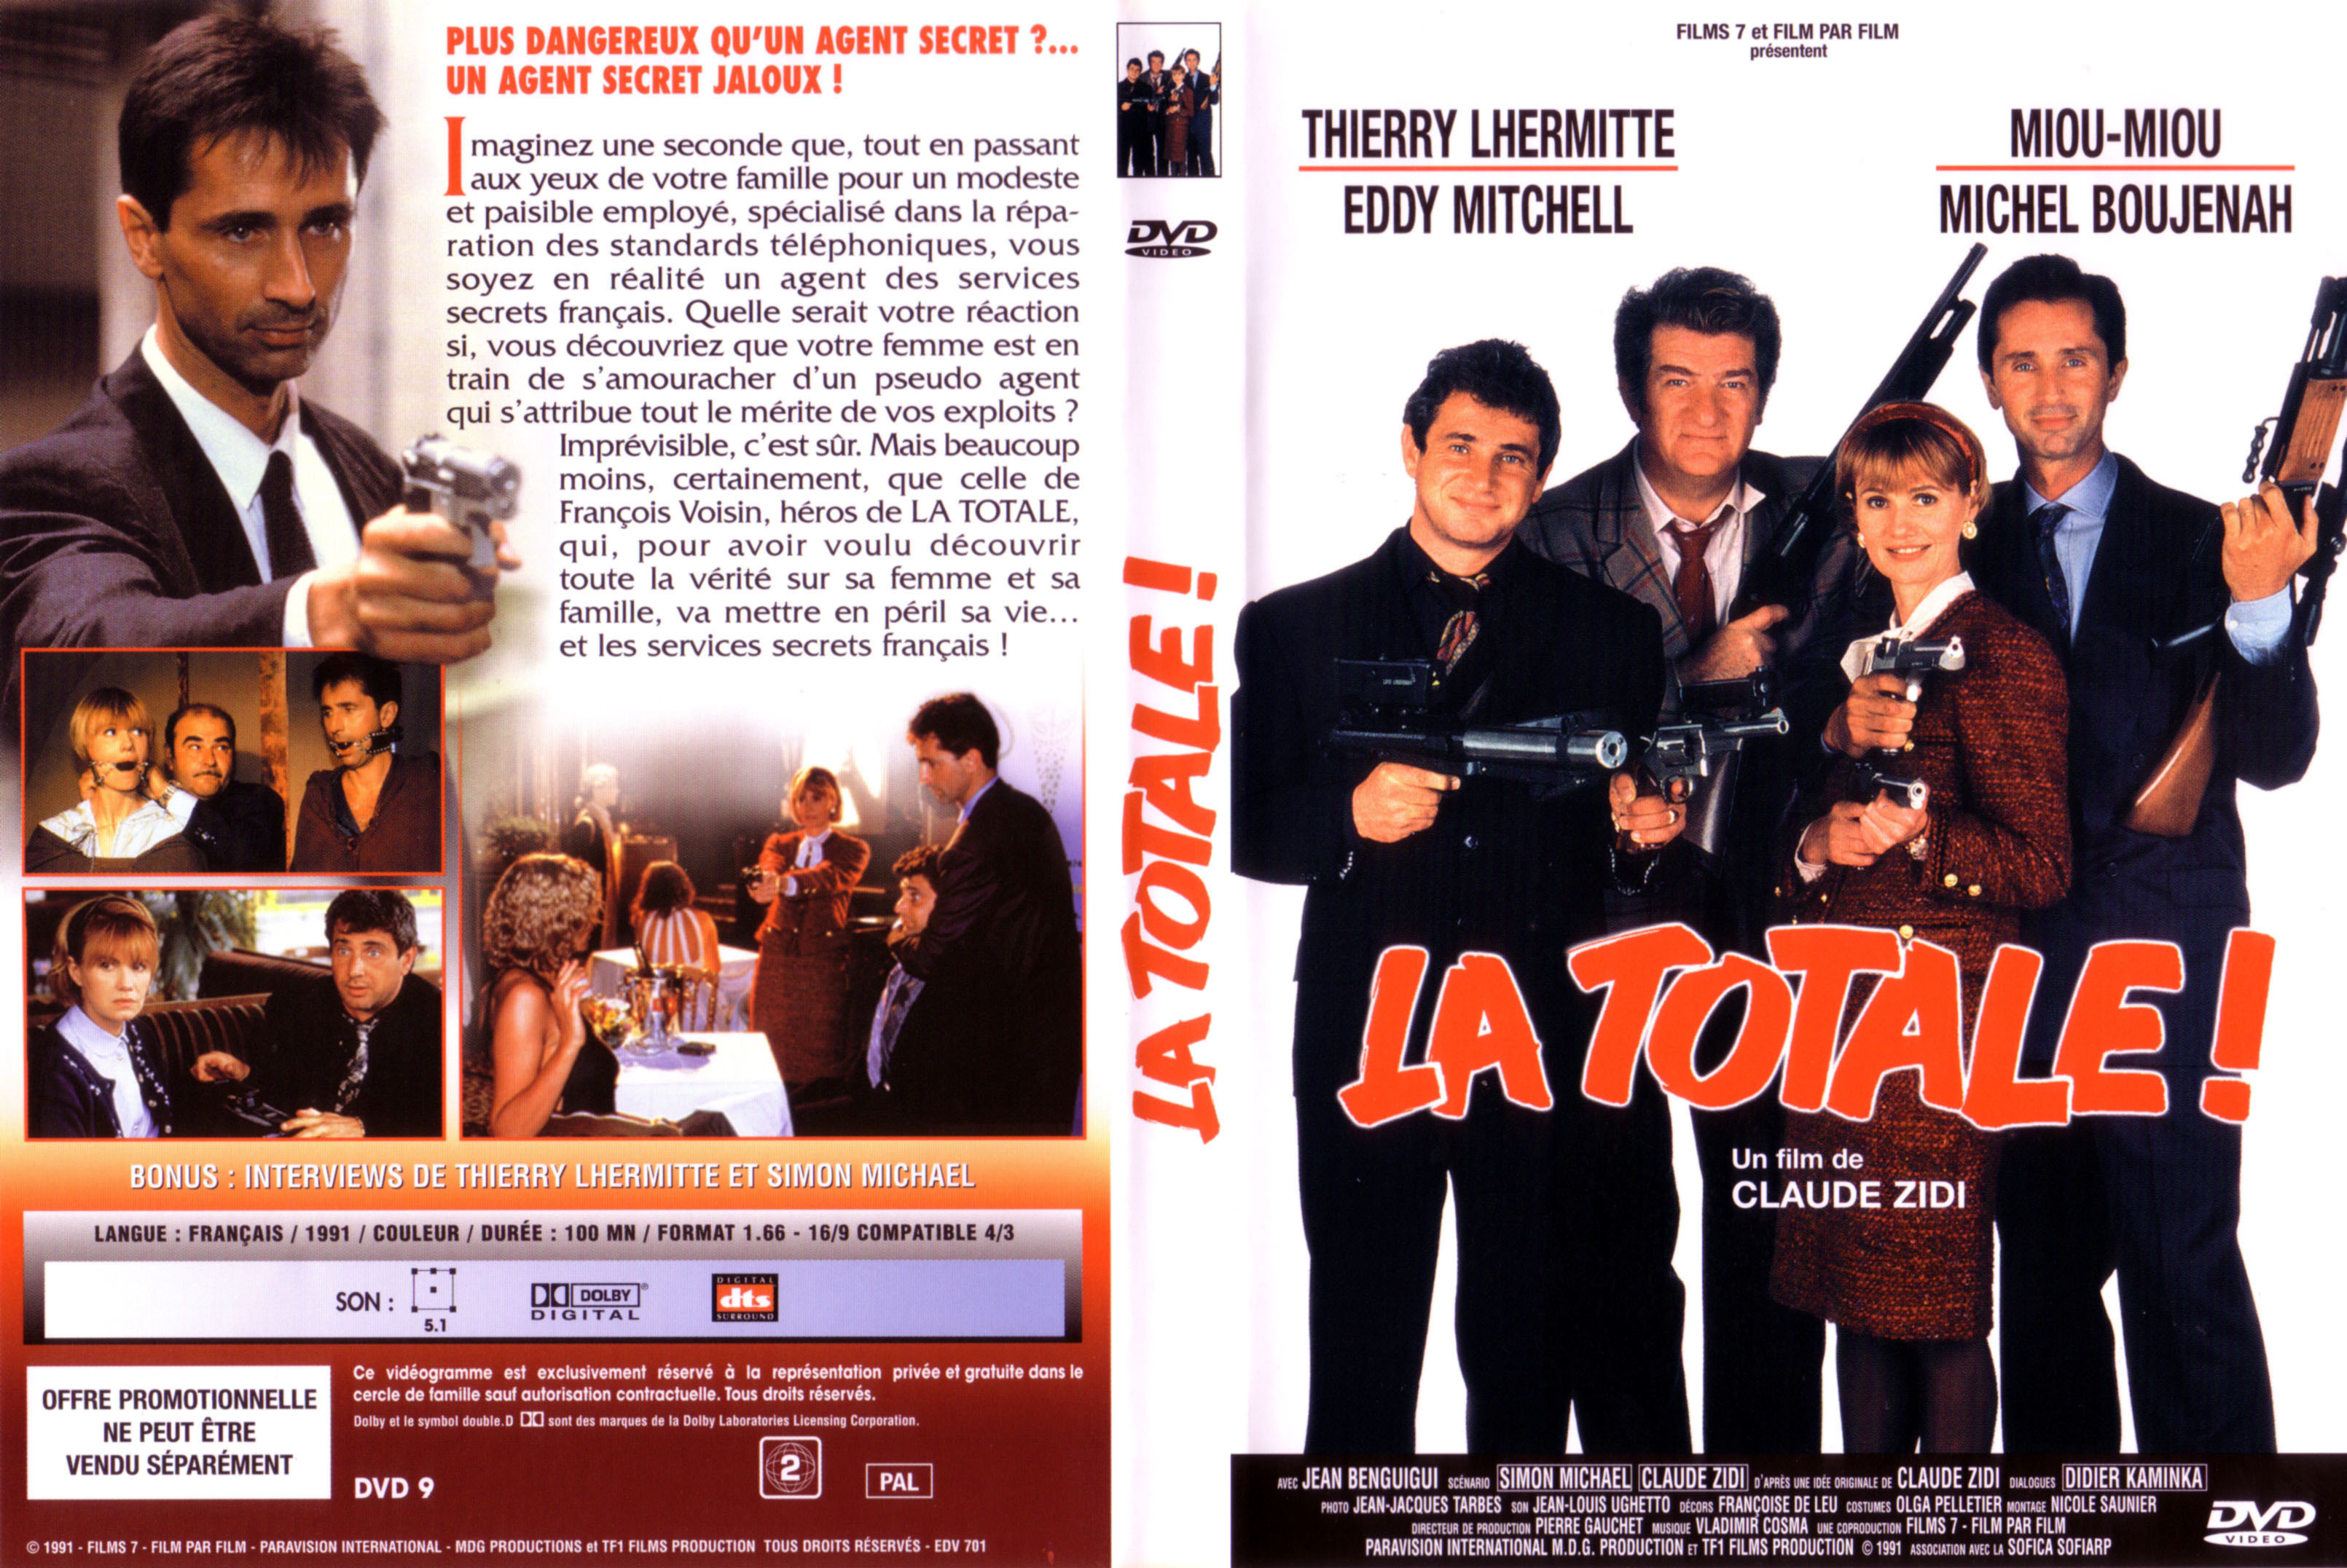 Jaquette DVD La totale v2